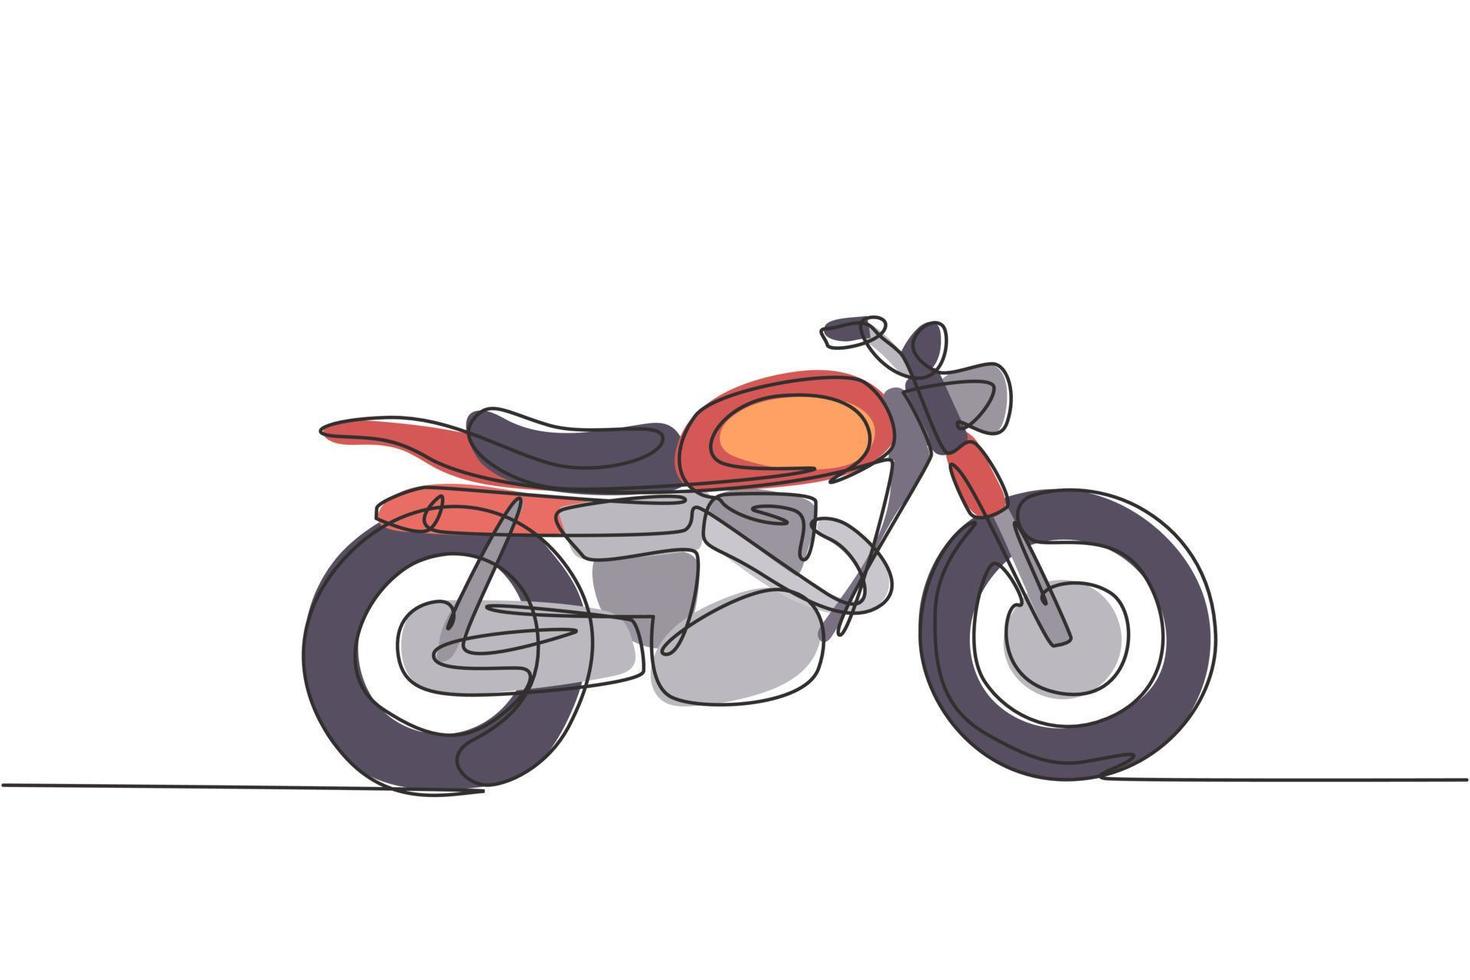 Eine durchgehende Strichzeichnung des Retro-Oldtimer-Motorradsymbols. klassisches Motorrad-Transportkonzept einzeilige Grafik-Draw-Design-Vektor-Illustration vektor